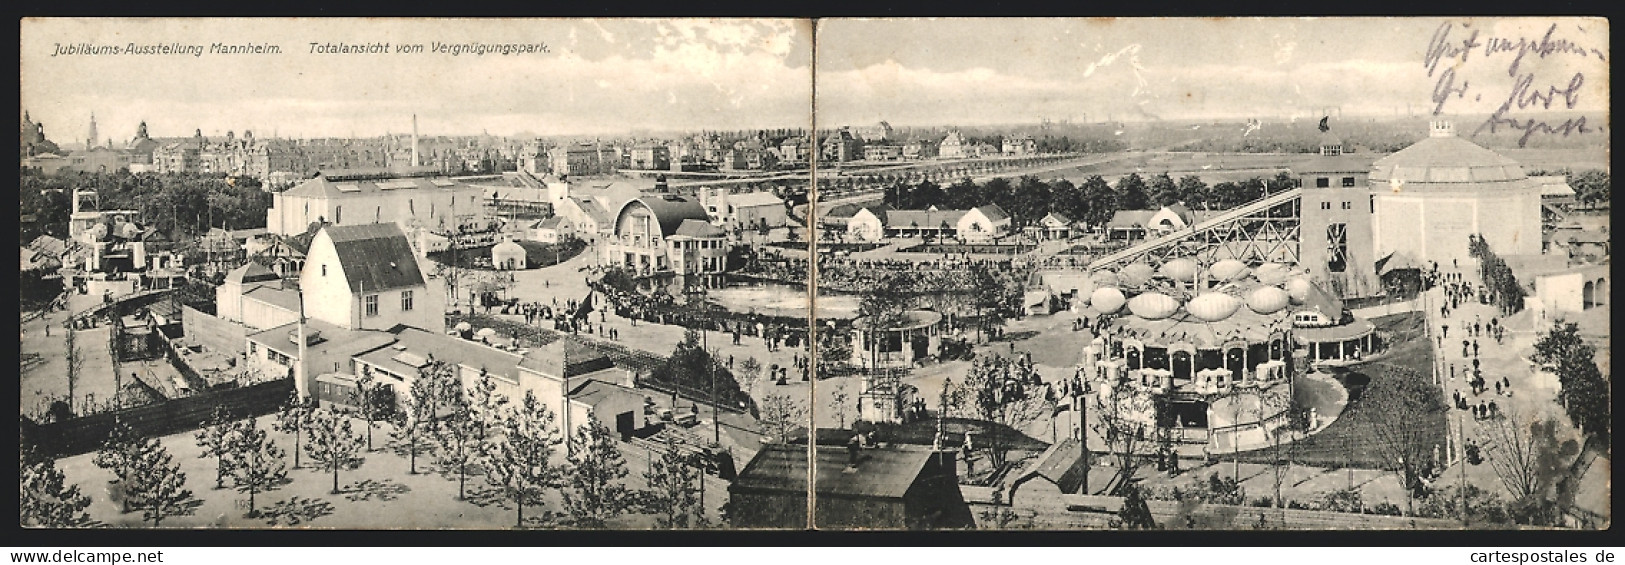 Klapp-AK Mannheim, Internat. Kunst & Grosse Gartenbau-Ausstellung 1907, Vergnügungspark  - Exhibitions